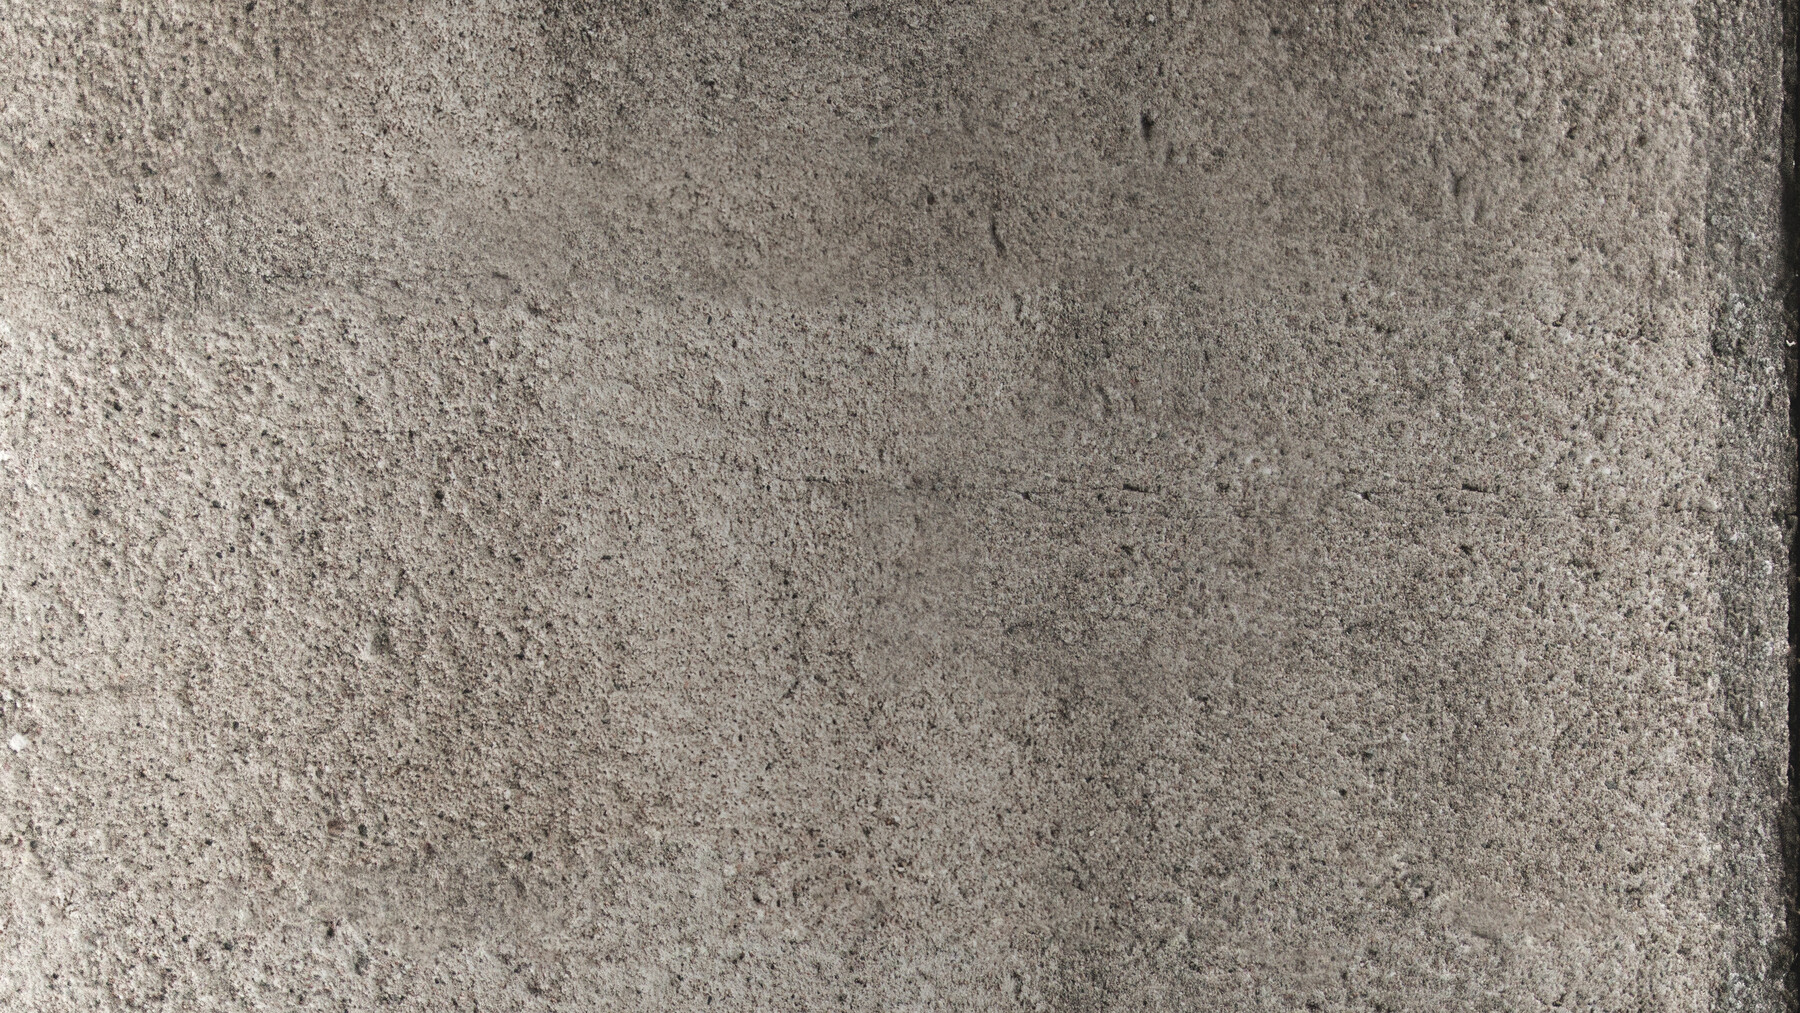 Juuso Voutilainen Pbr Concrete 16 8k Seamless Texture 5 Variations